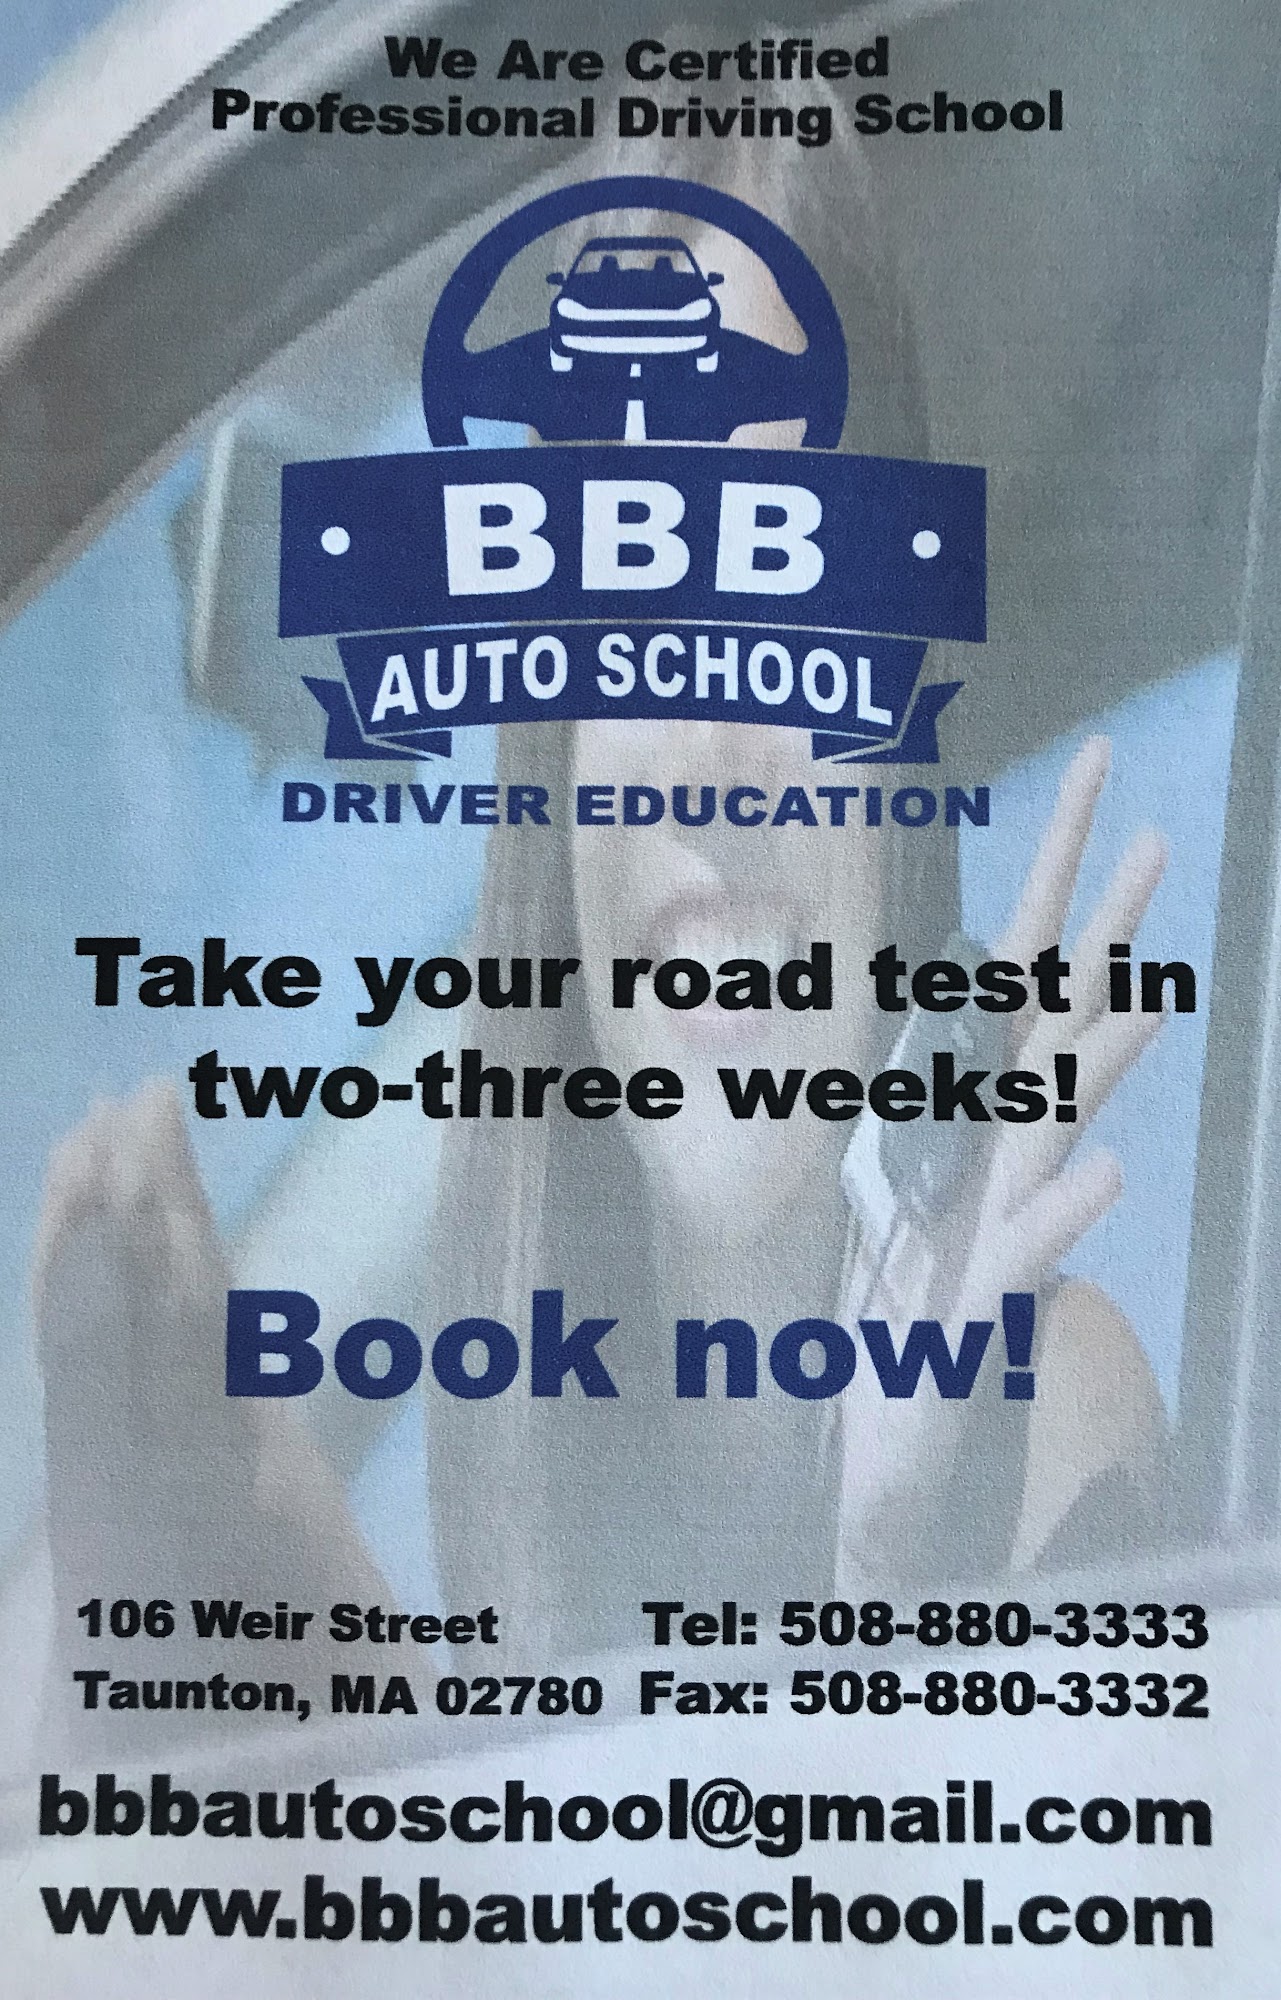 BBB Auto School